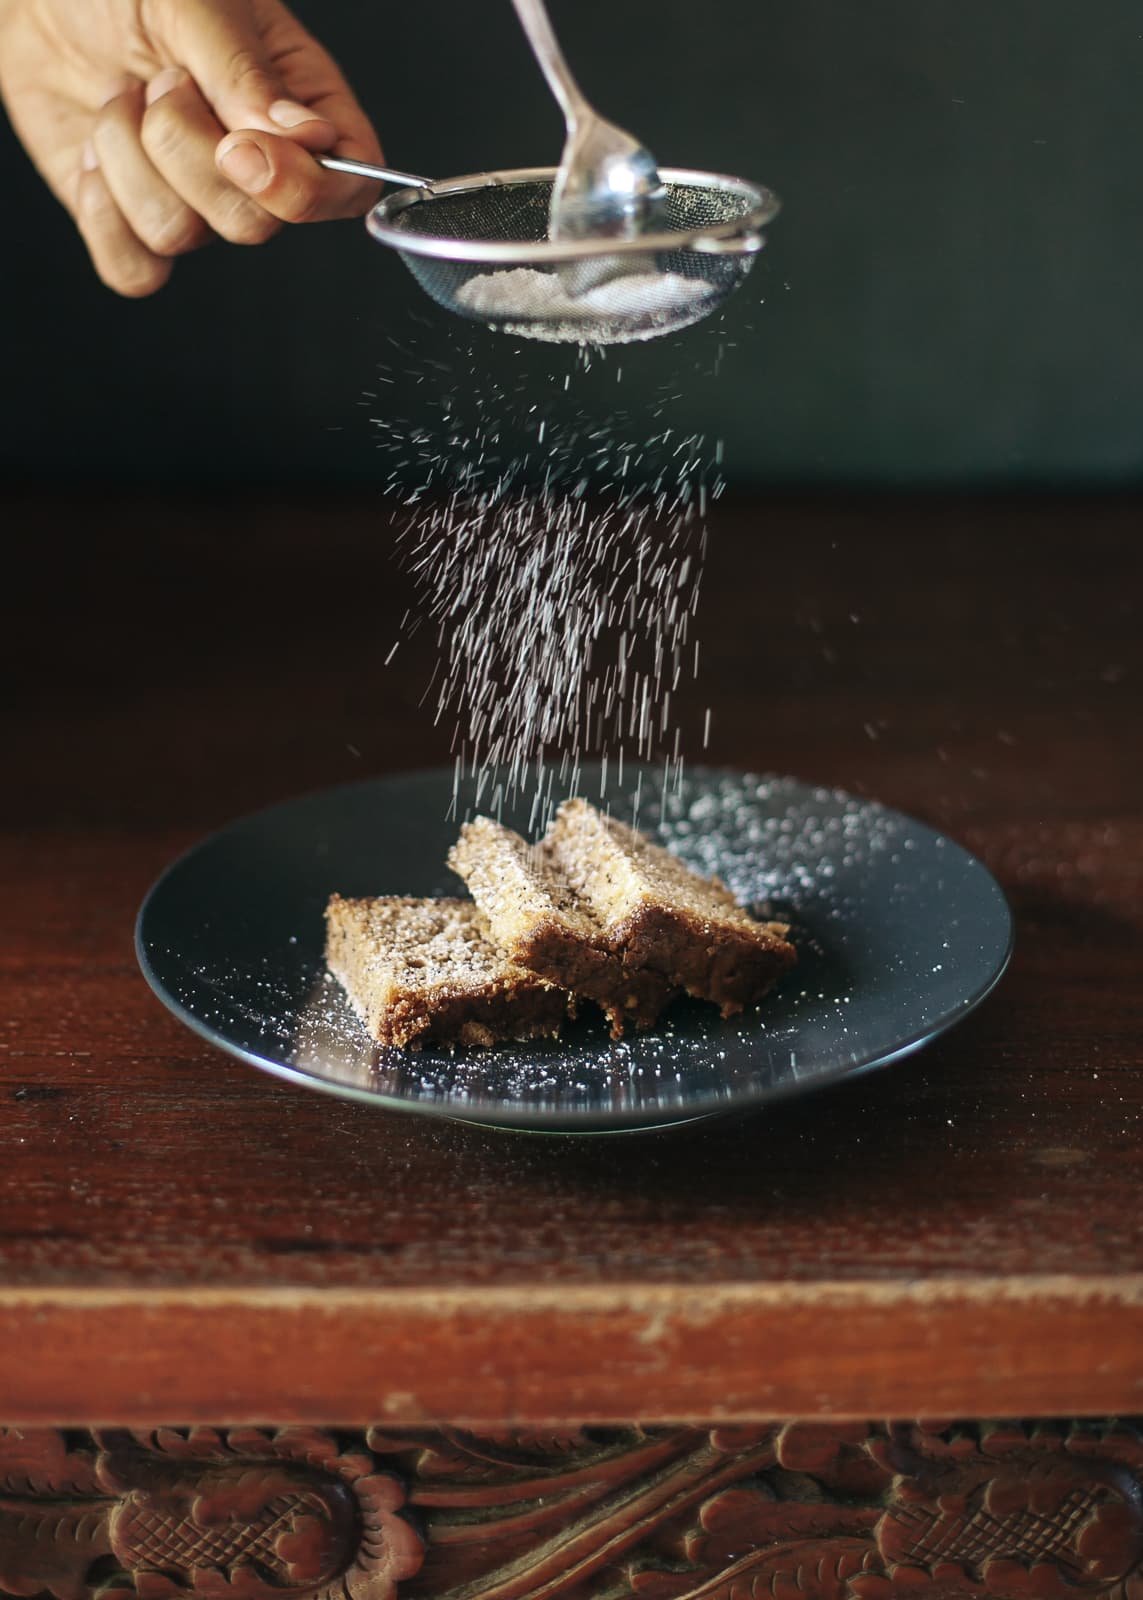 Fotografía profesional de un cocinero echando azur glaseado sobre un trozo de pastel